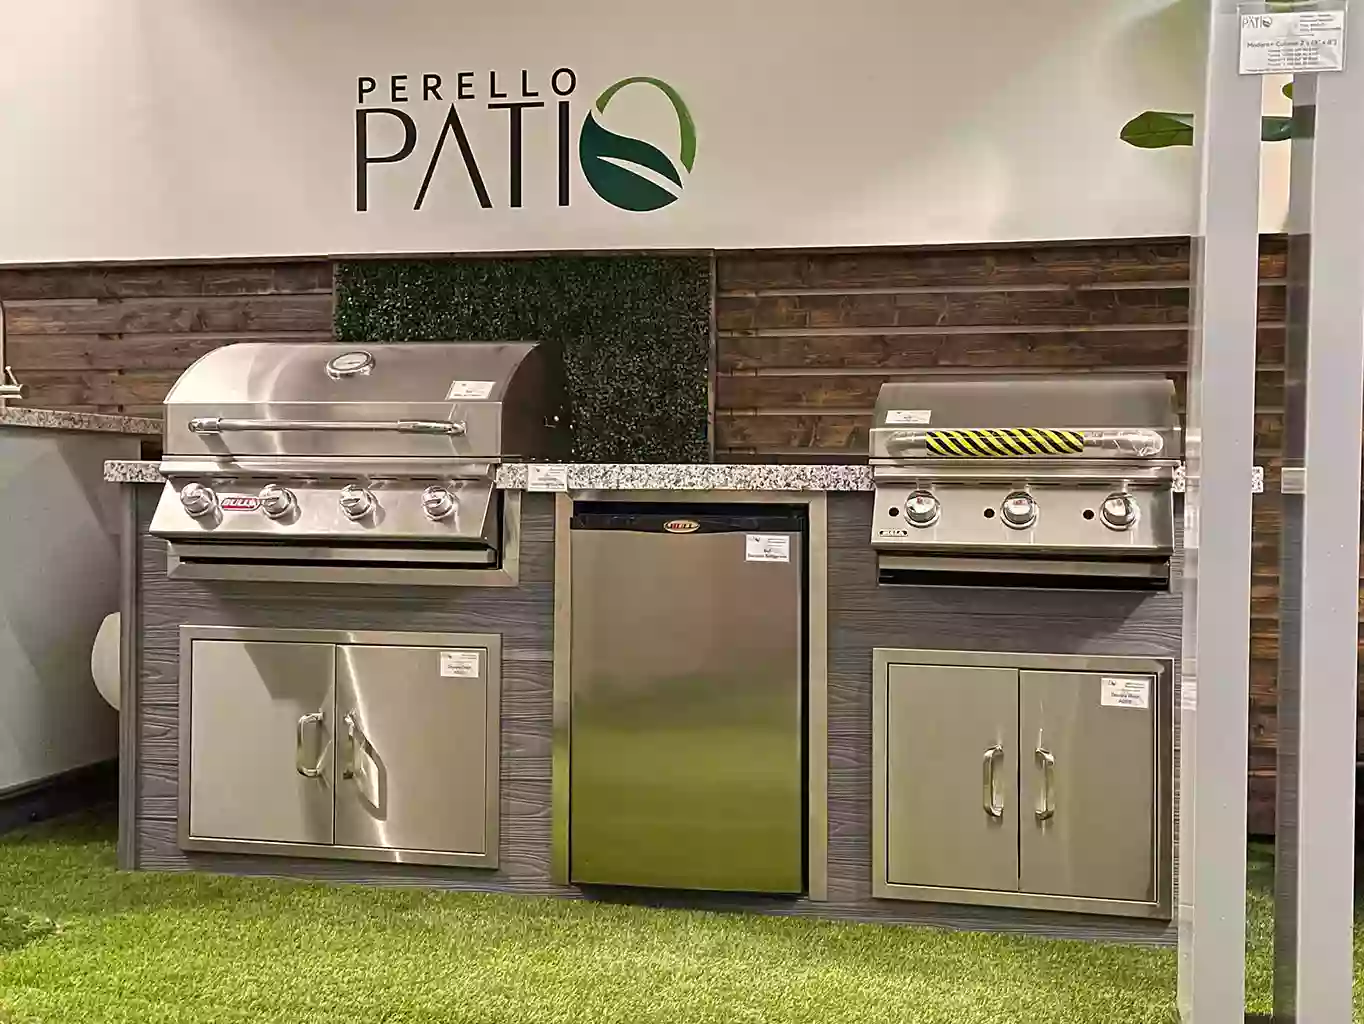 PERELLO PATIO Outdoor Kitchens Miami & Pergolas Manufacturer